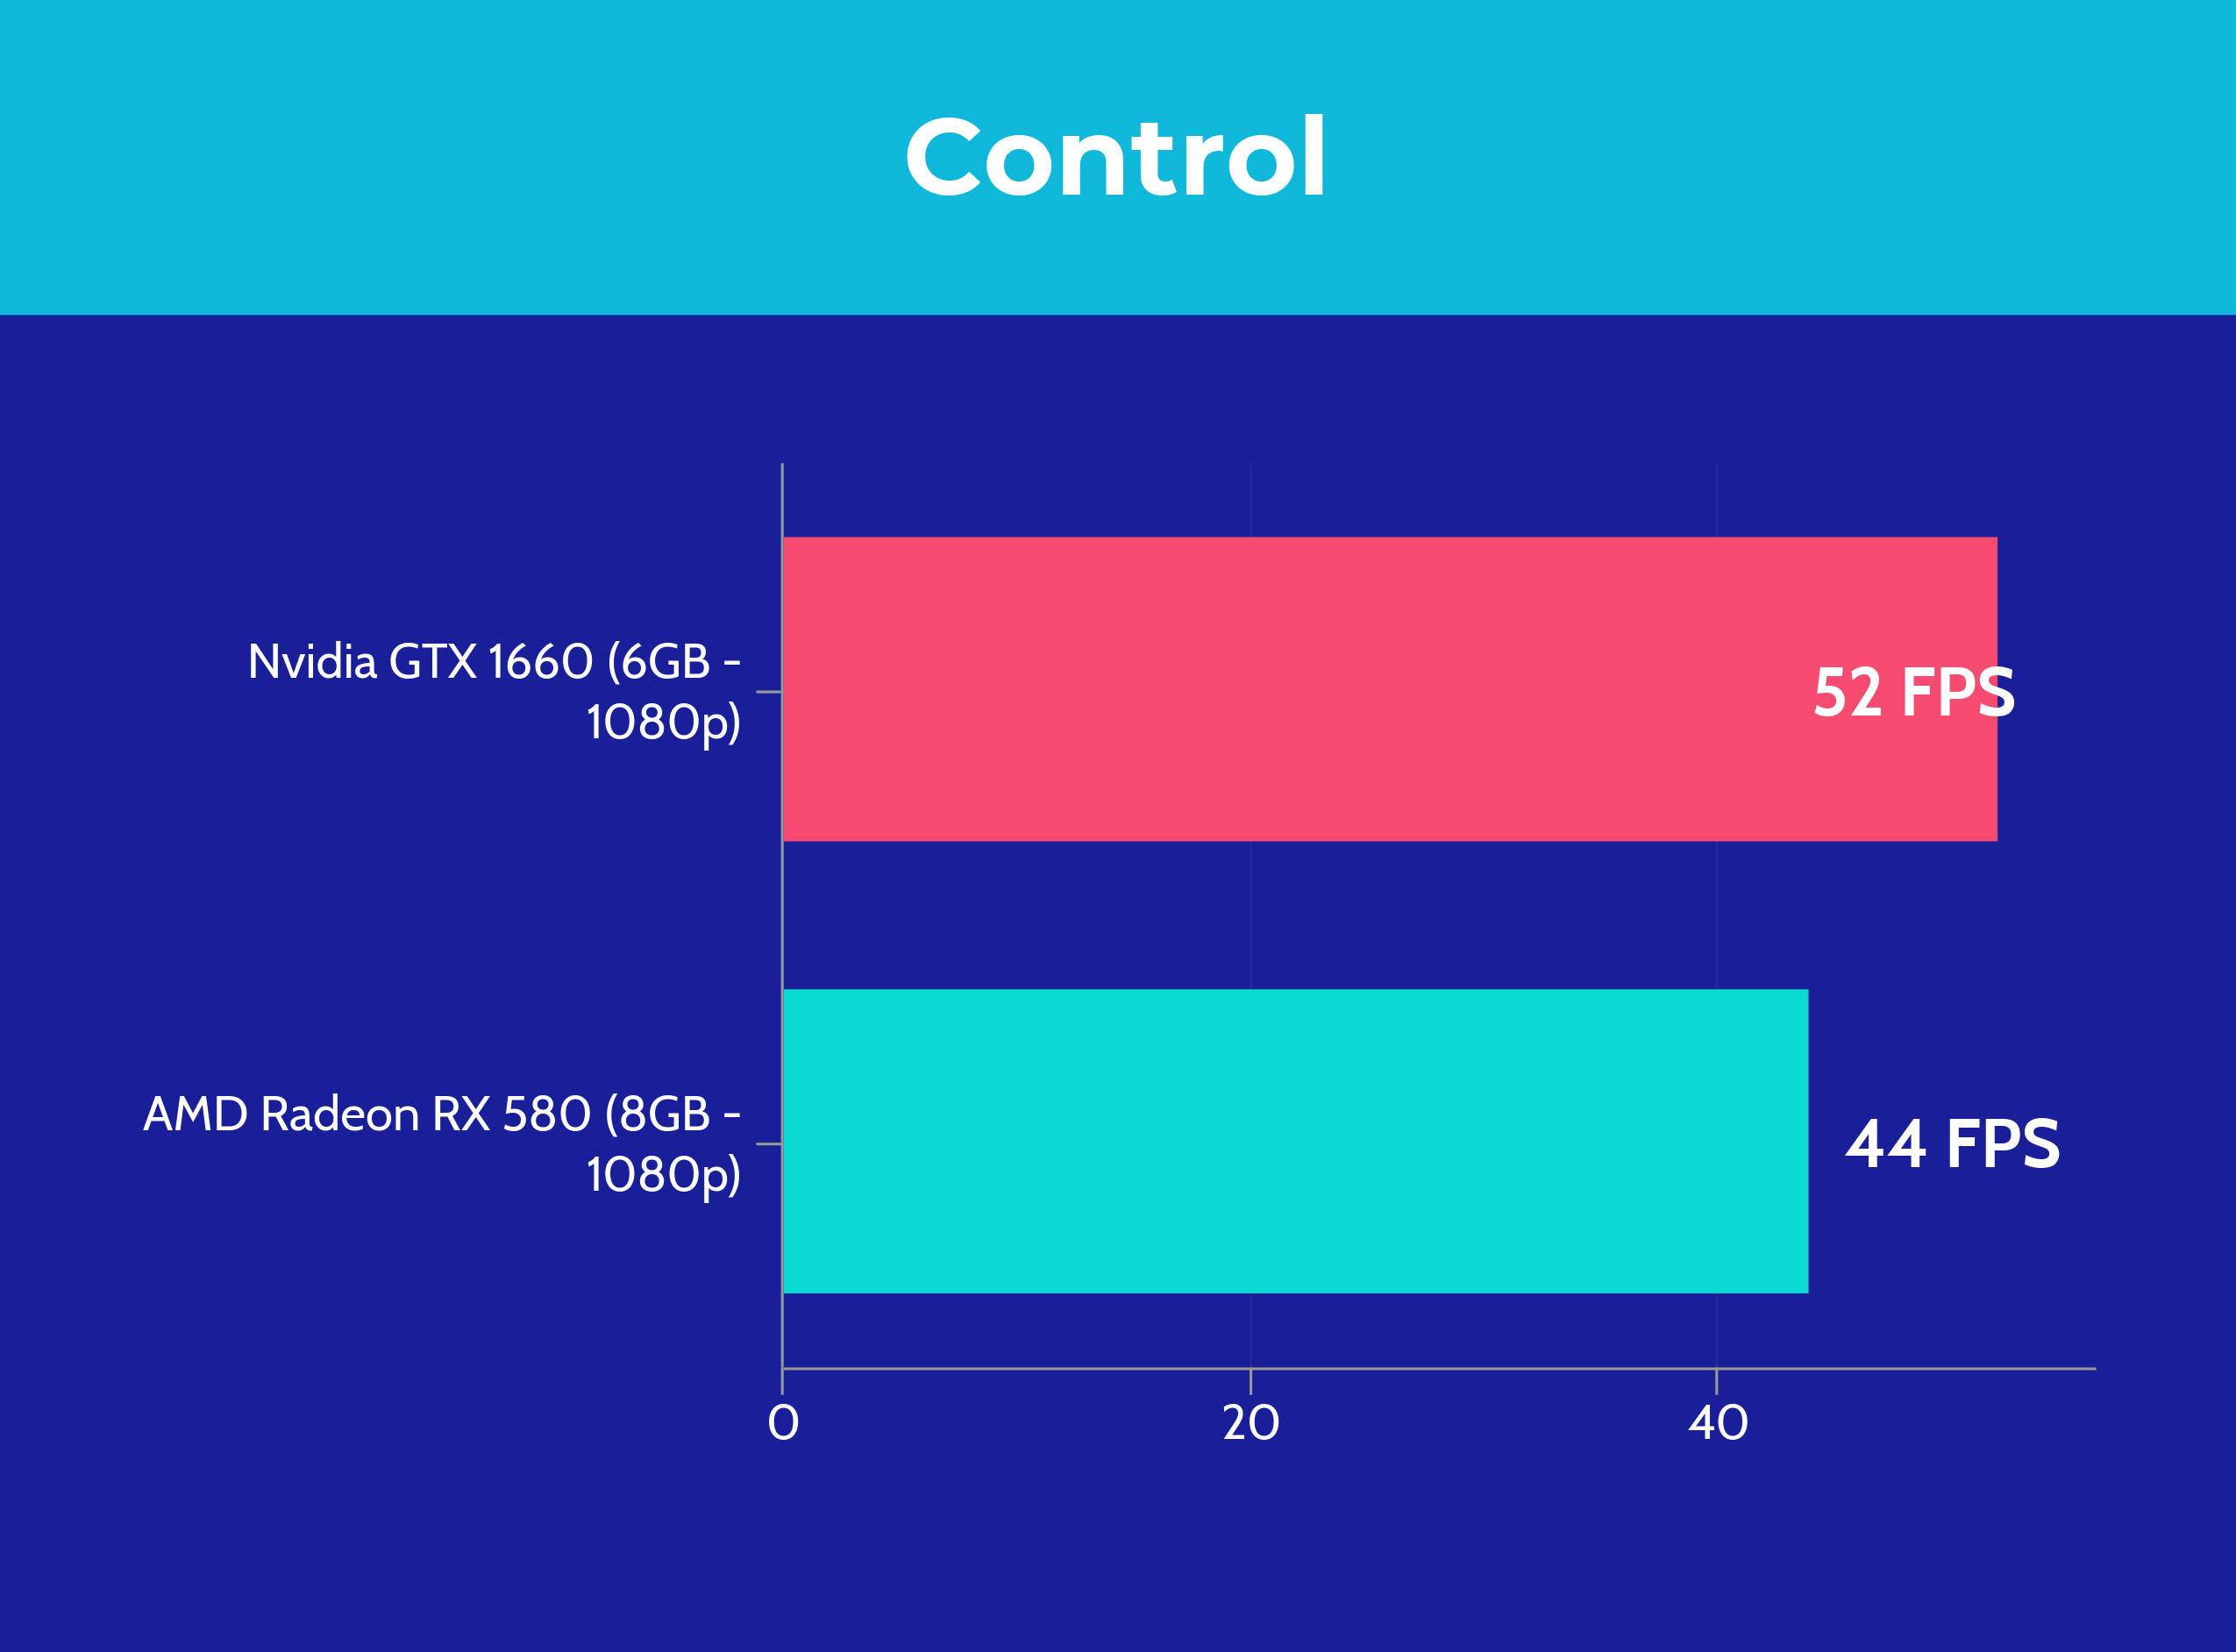 GTX 1660 vs RX 580 - Control